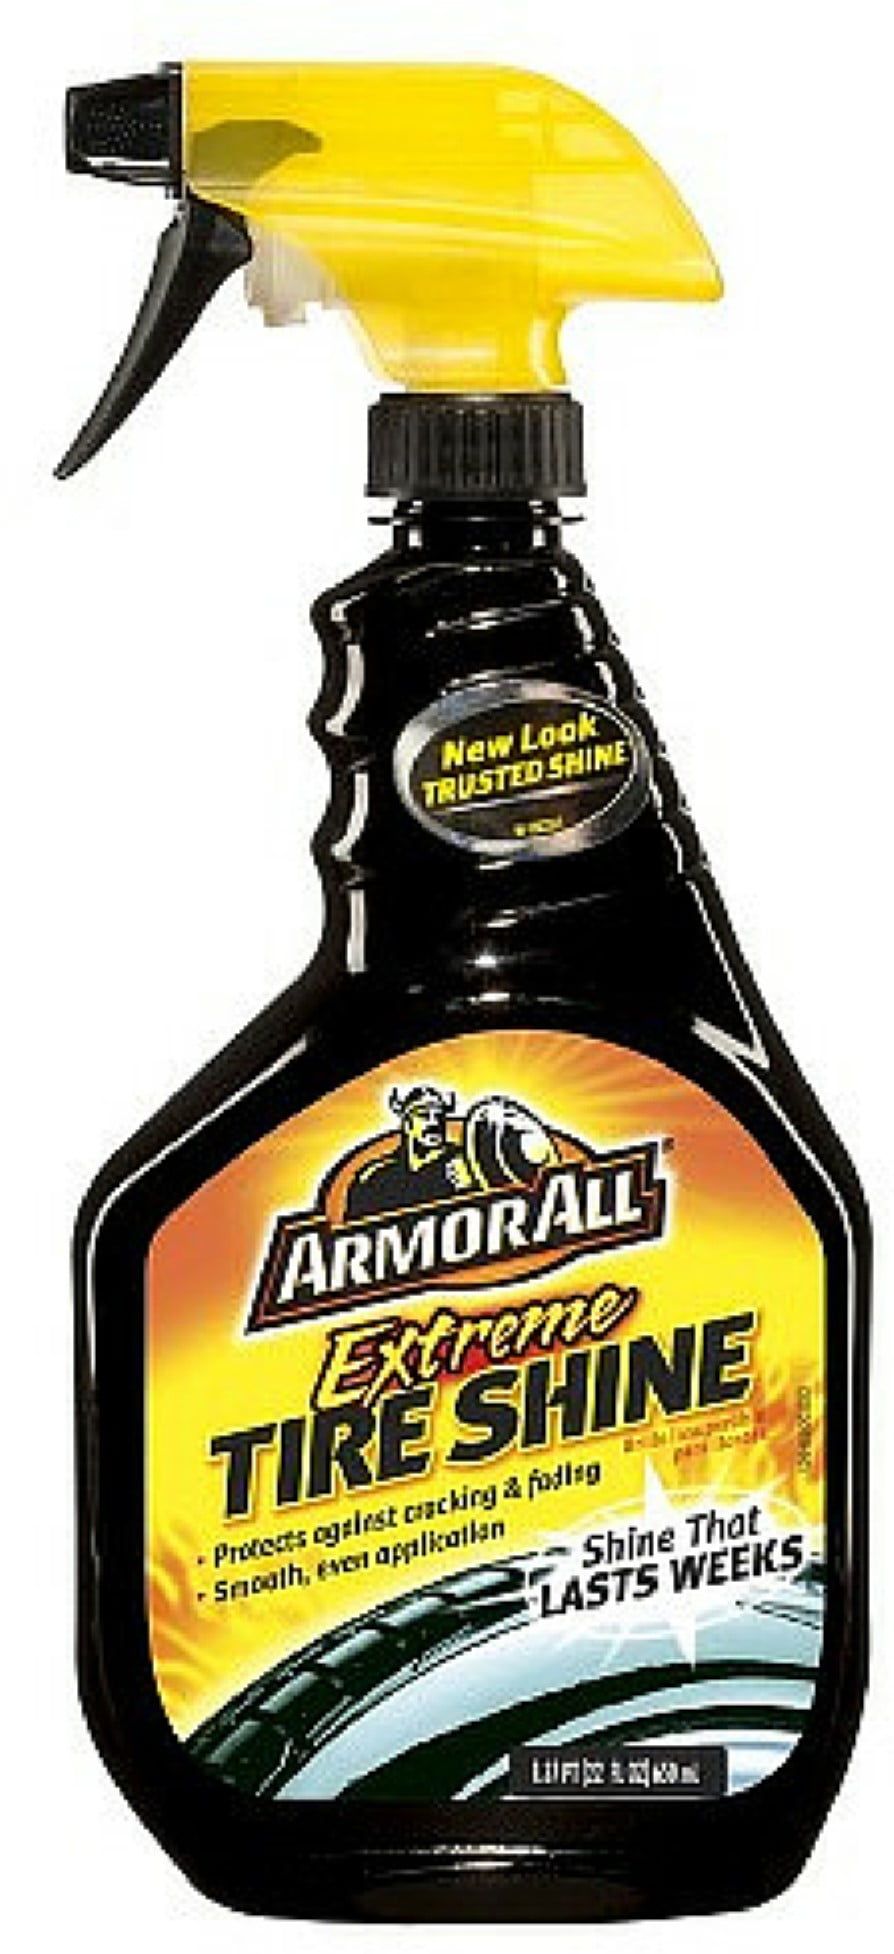 Armor All Extreme Tyre Shine Aerosol 350g - E301722600 - Armor All